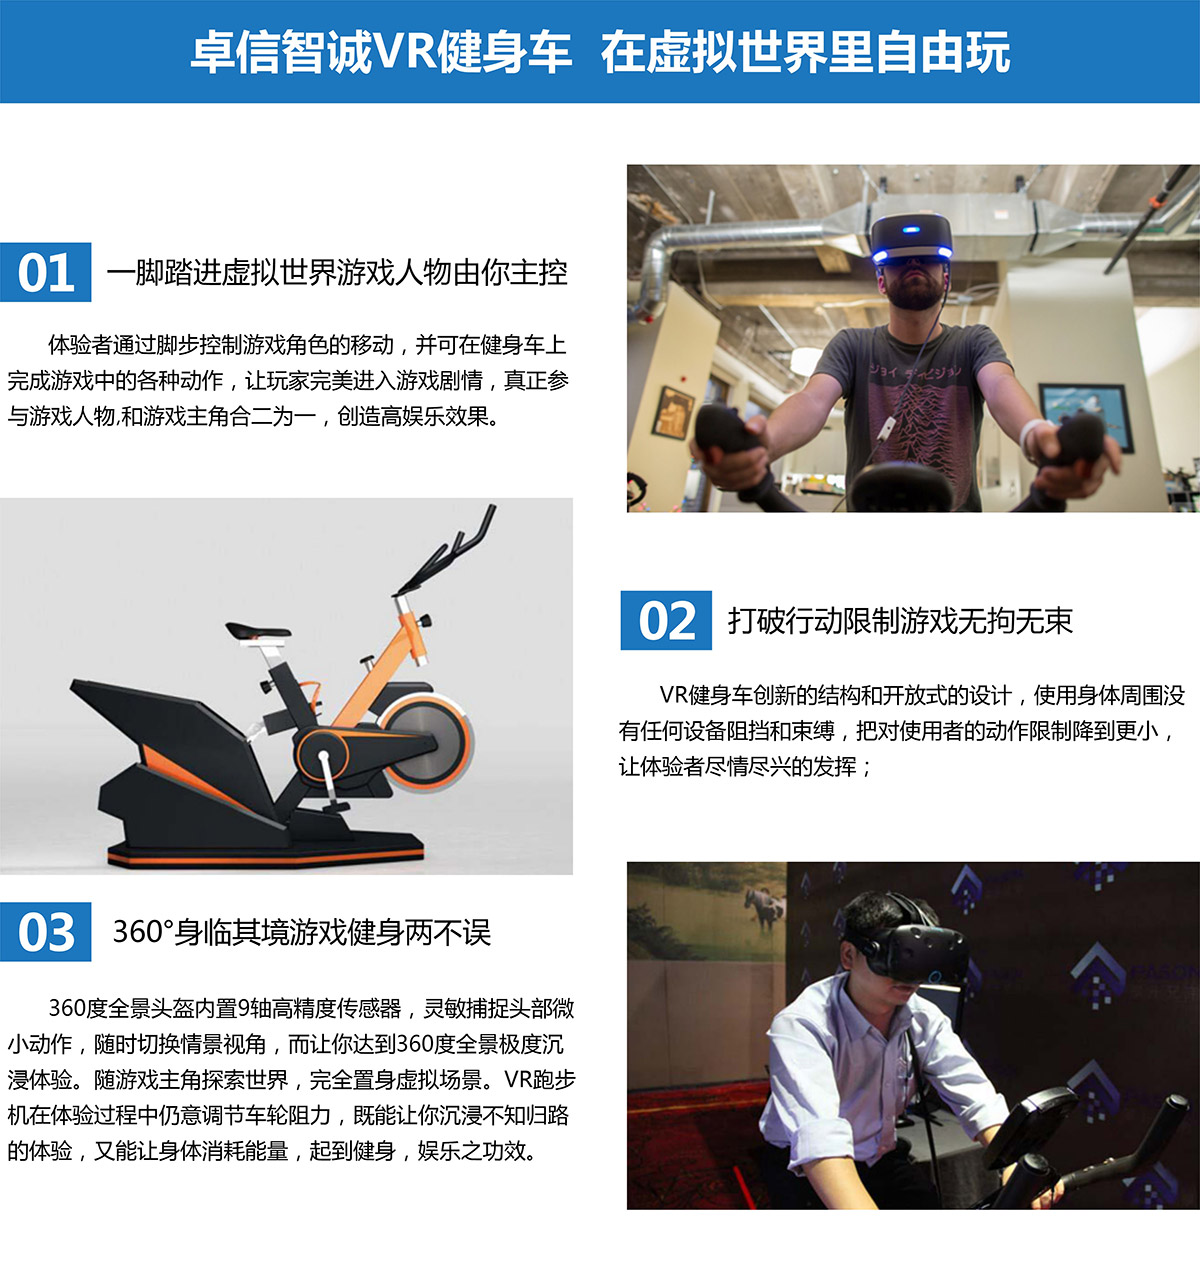 05-卓信智诚VR健身车在卓信智诚自由玩.jpg